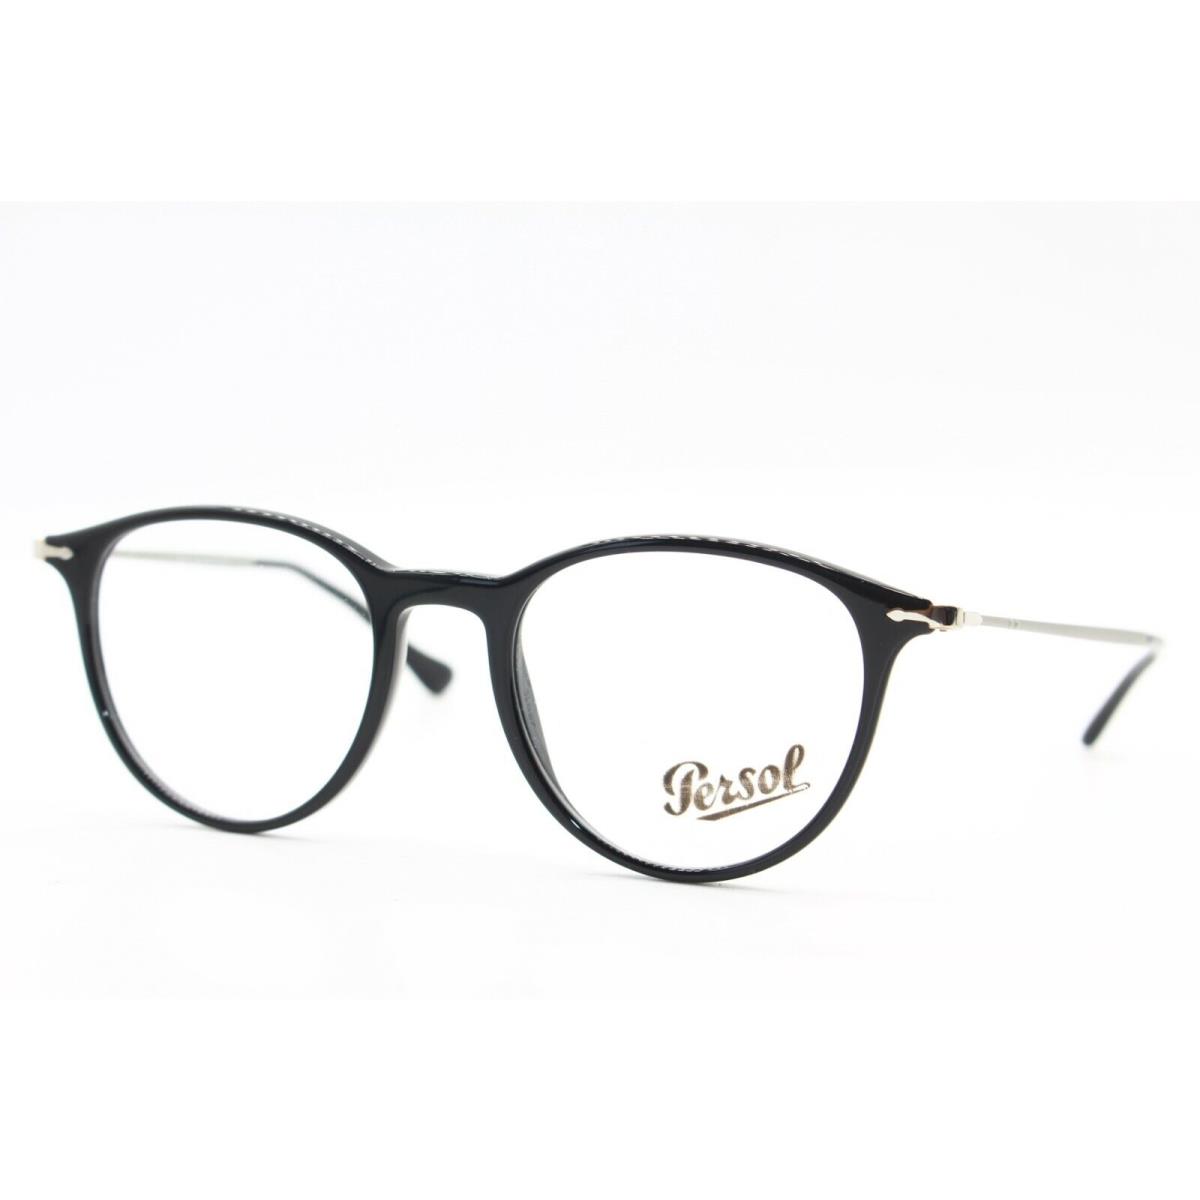 Persol eyeglasses  - BLACK Frame